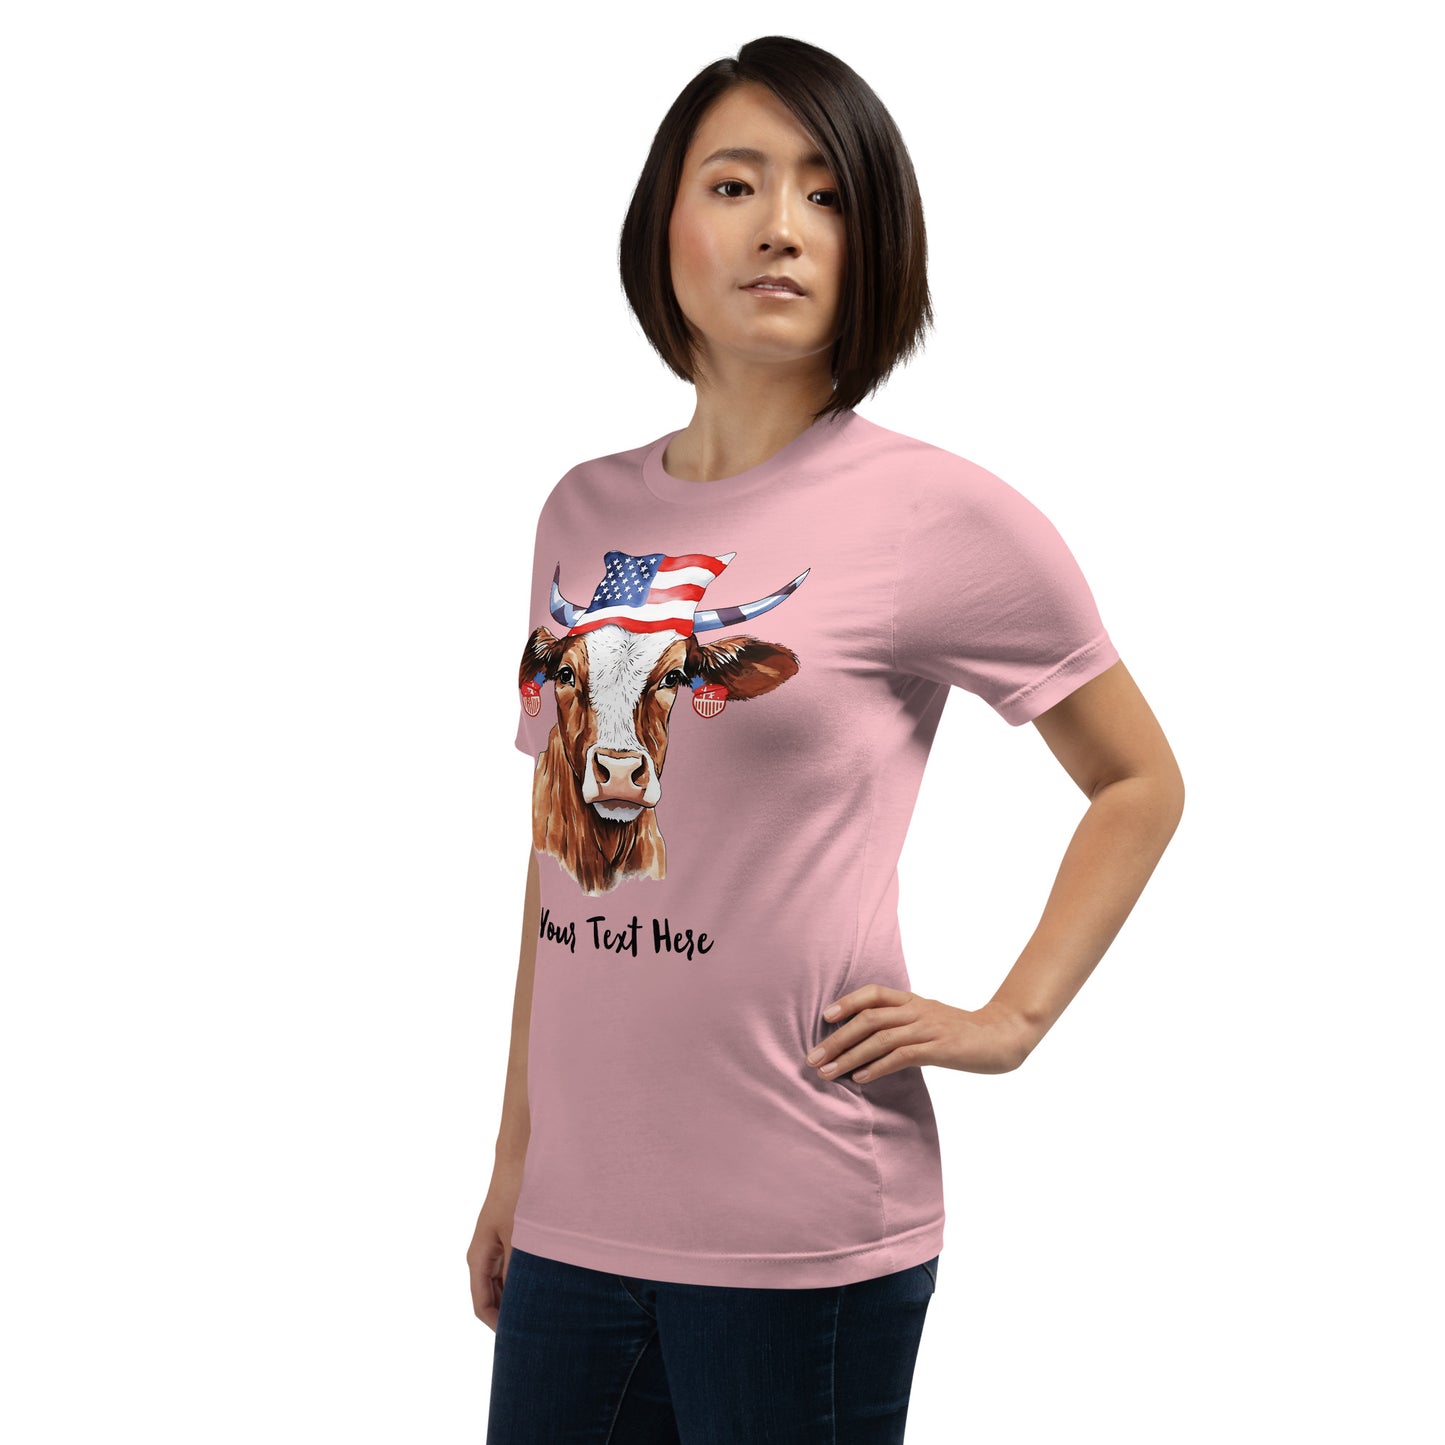 Aanpasbare T-shirt met patriottische koe voor koeliefhebbers